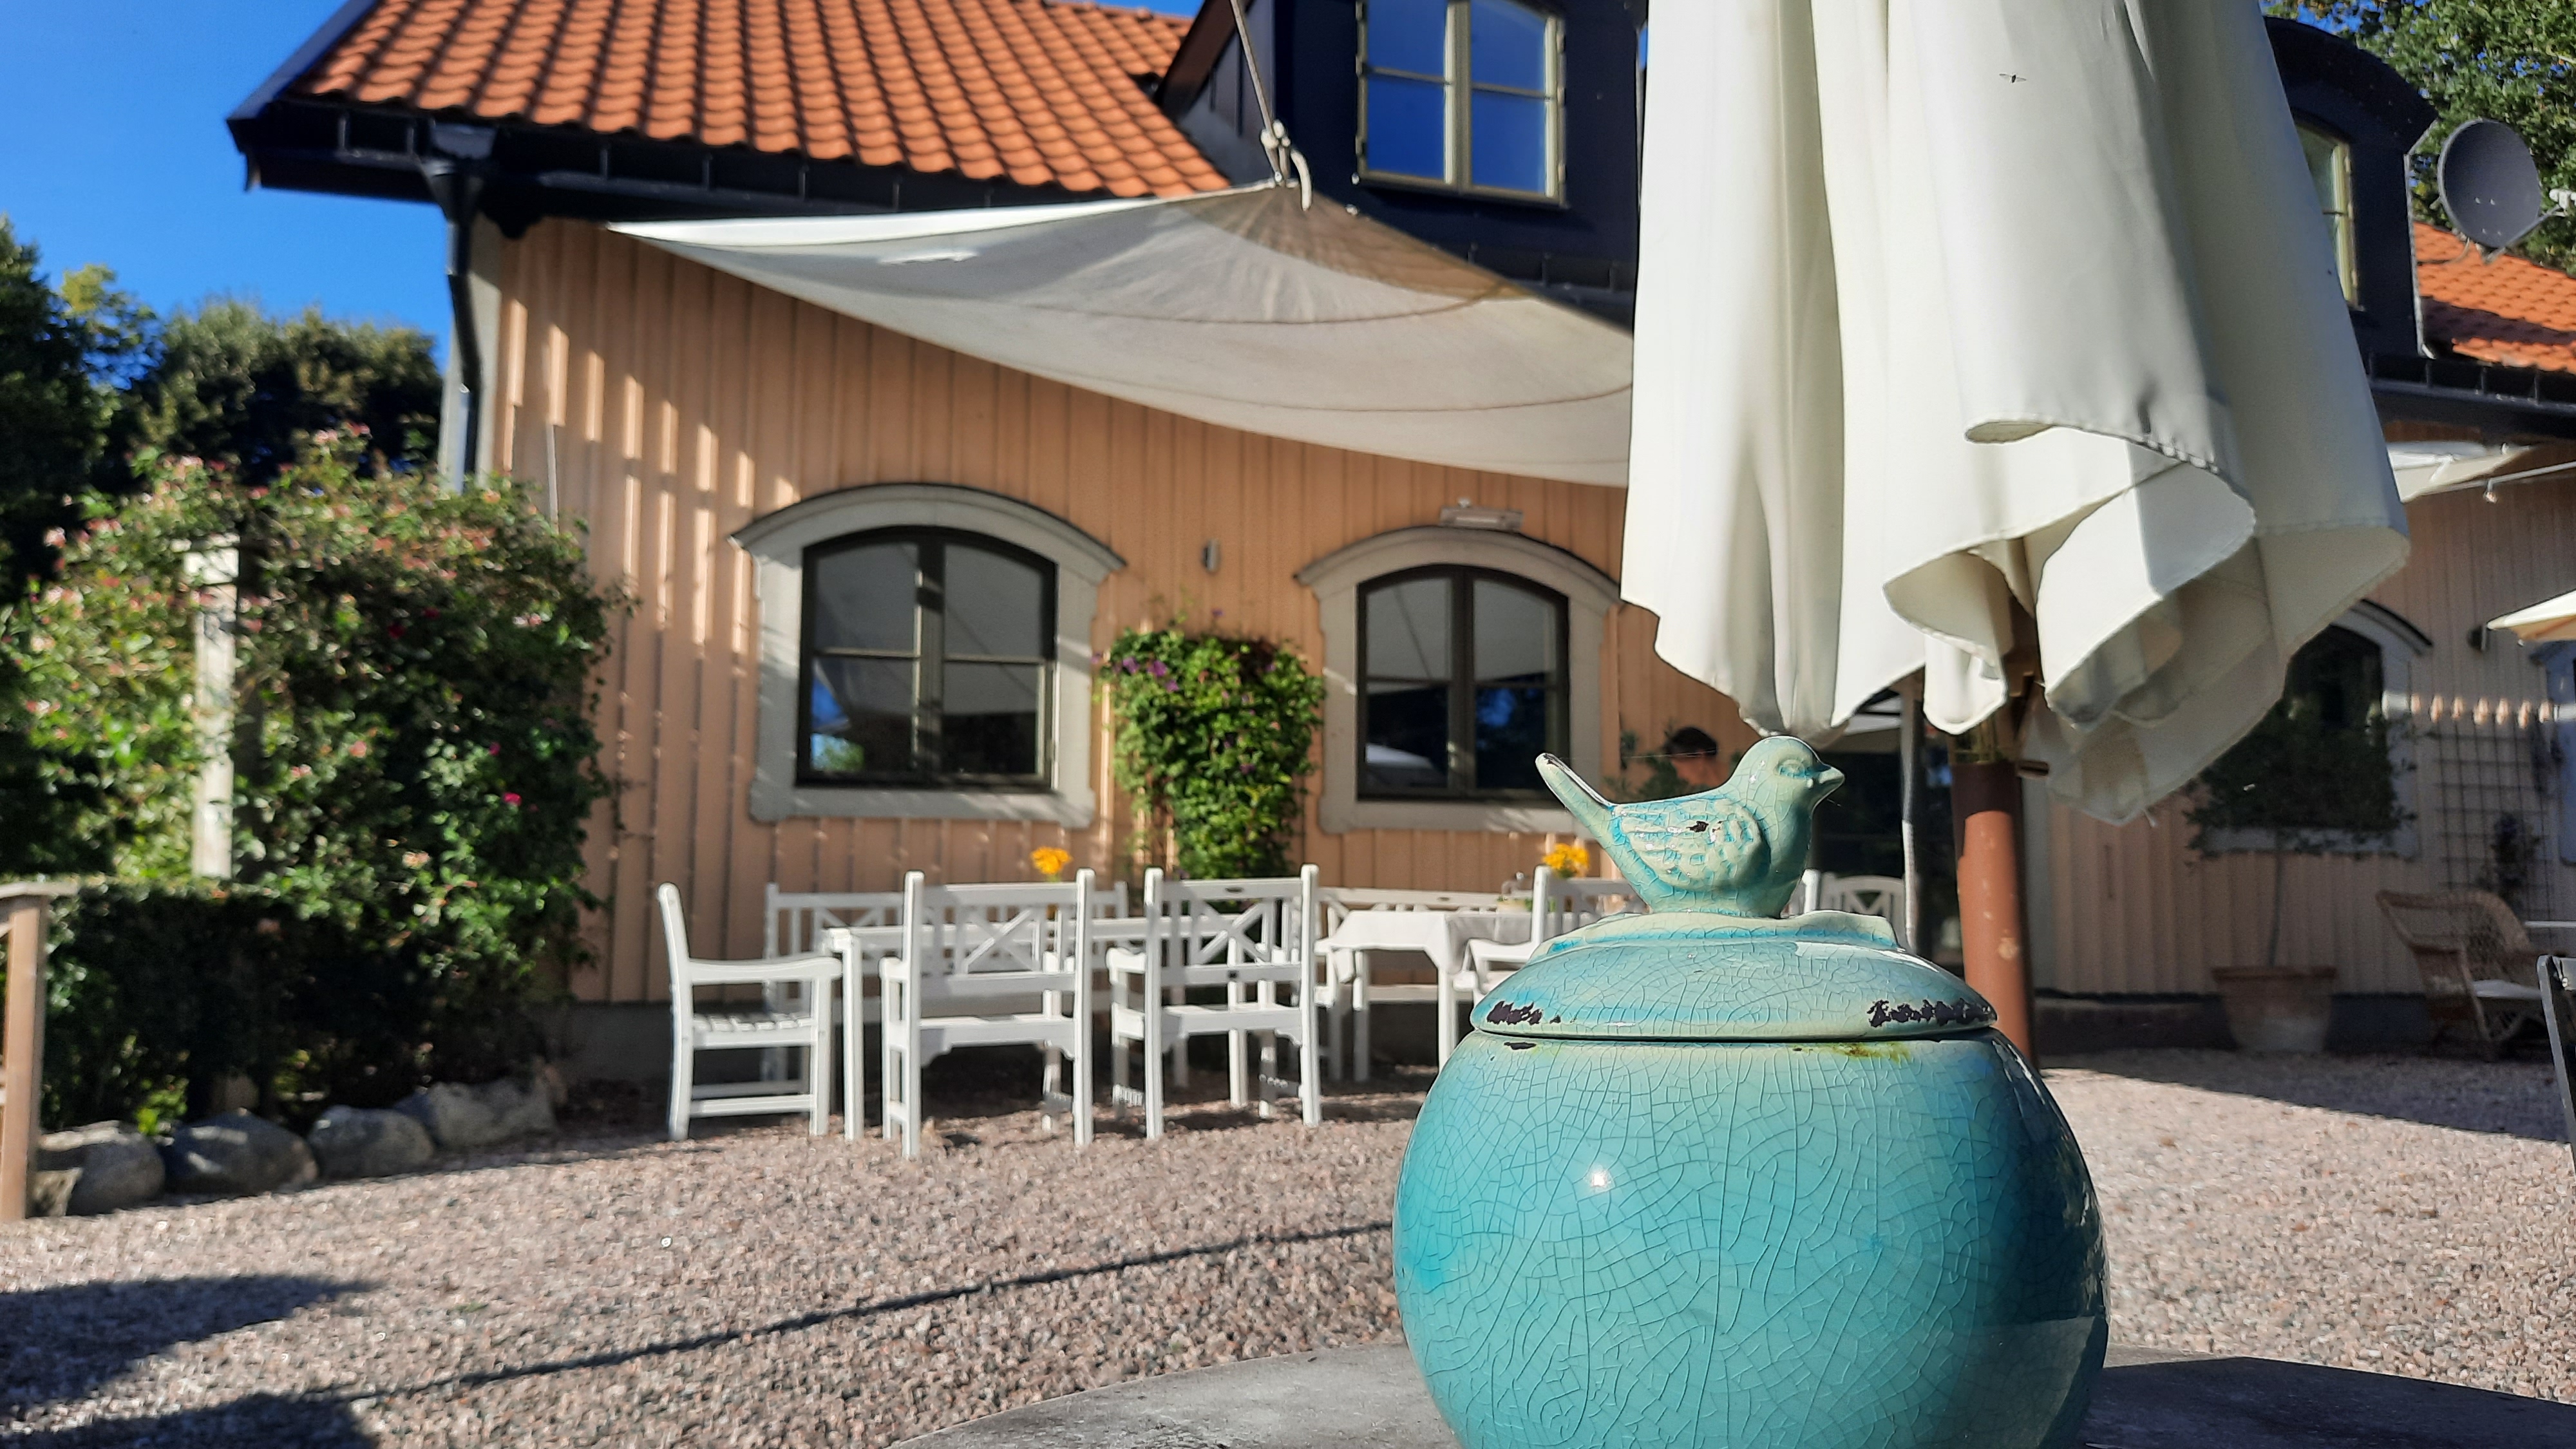 Gul byggnad med vitt parasoll utanför. I förgrunden syns en blå porslinsskål på ett bord.